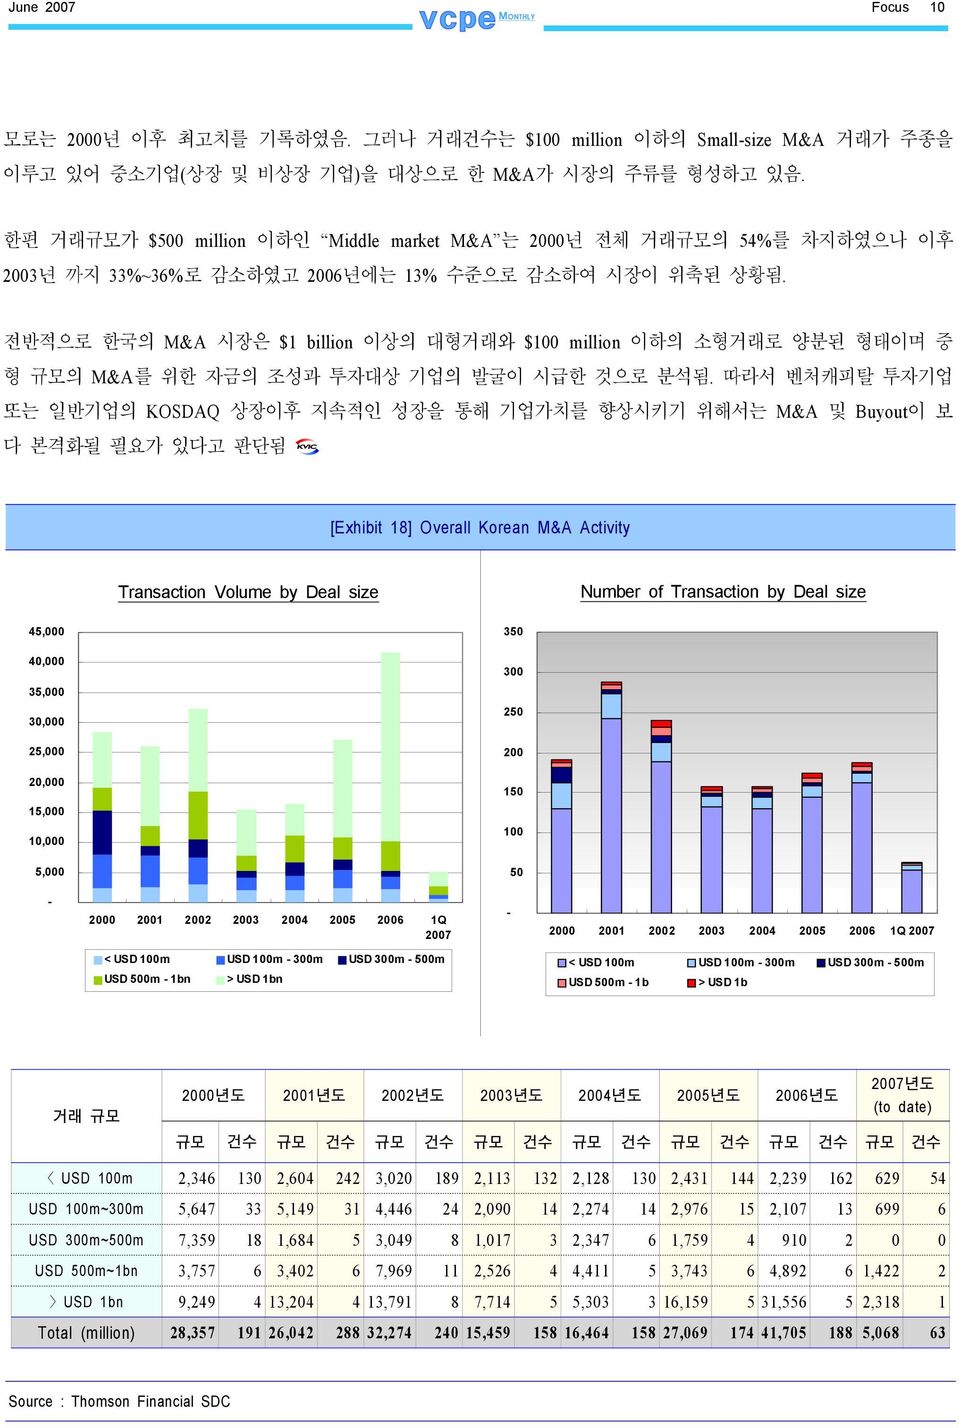 전반적으로 한국의 M&A 시장은 $1 billion 이상의 대형거래와 $100 million 이하의 소형거래로 양분된 형태이며 중 형 규모의 M&A를 위한 자금의 조성과 투자대상 기업의 발굴이 시급한 것으로 분석됨.